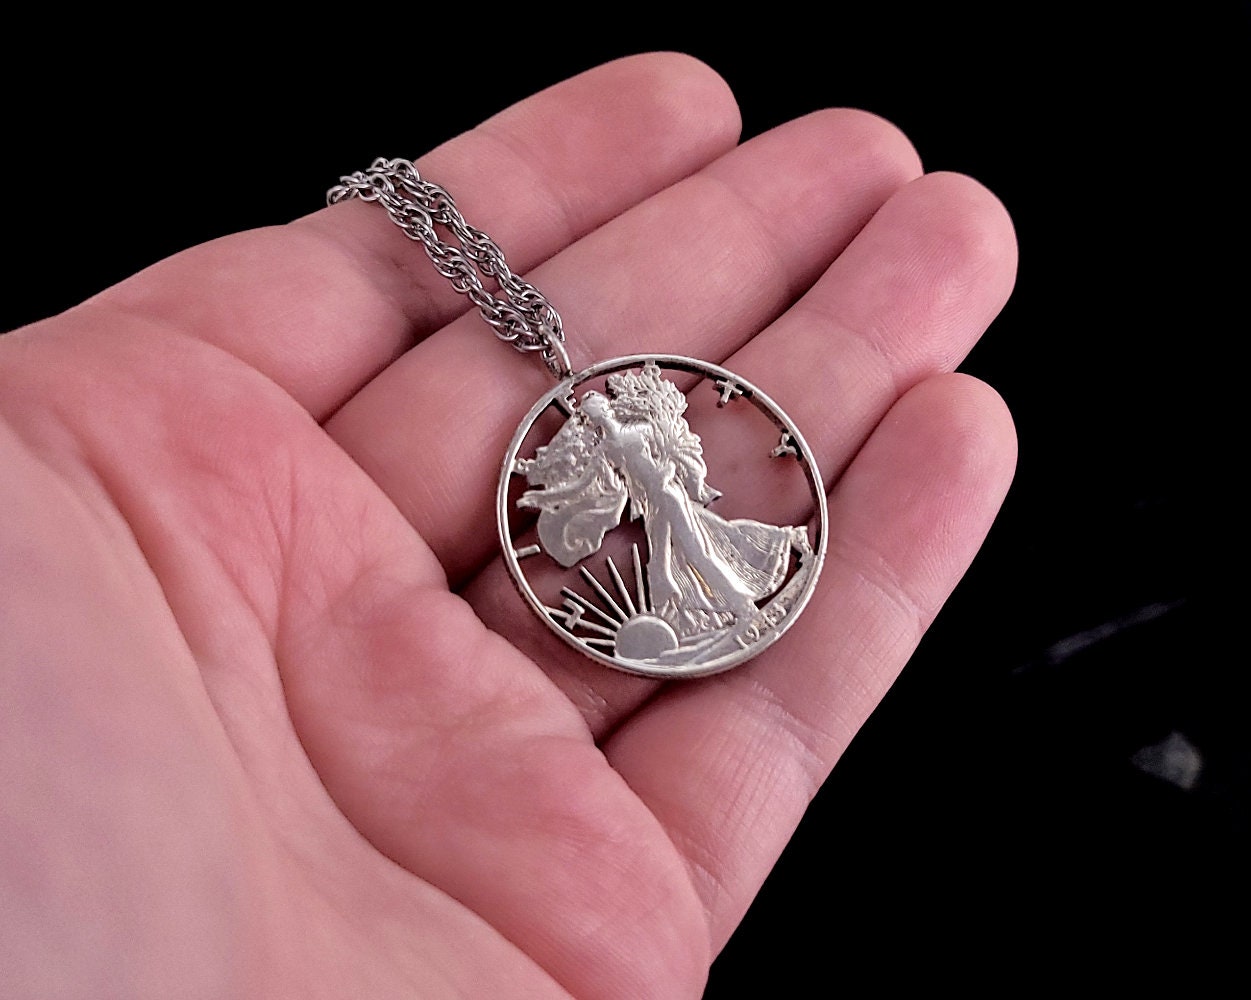 Silver 1964 Half Dollar Necklace | eBay